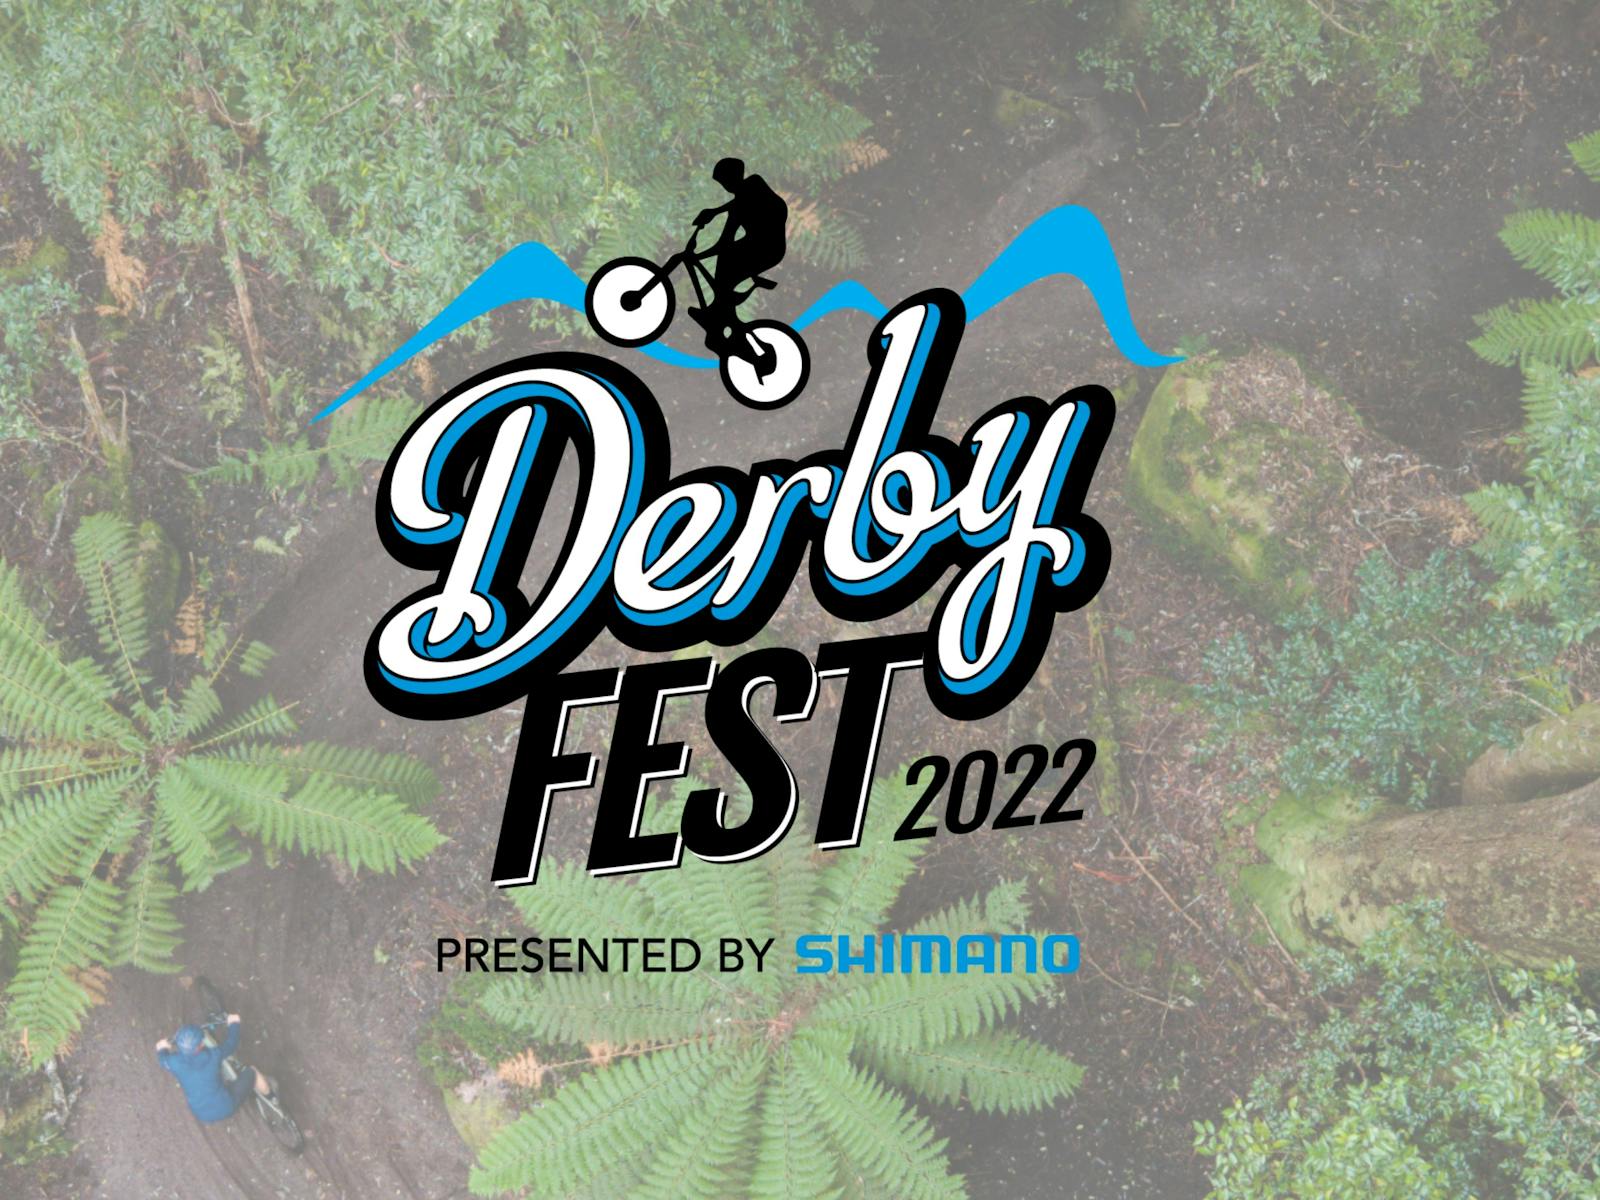 Image for DerbyFest 2022